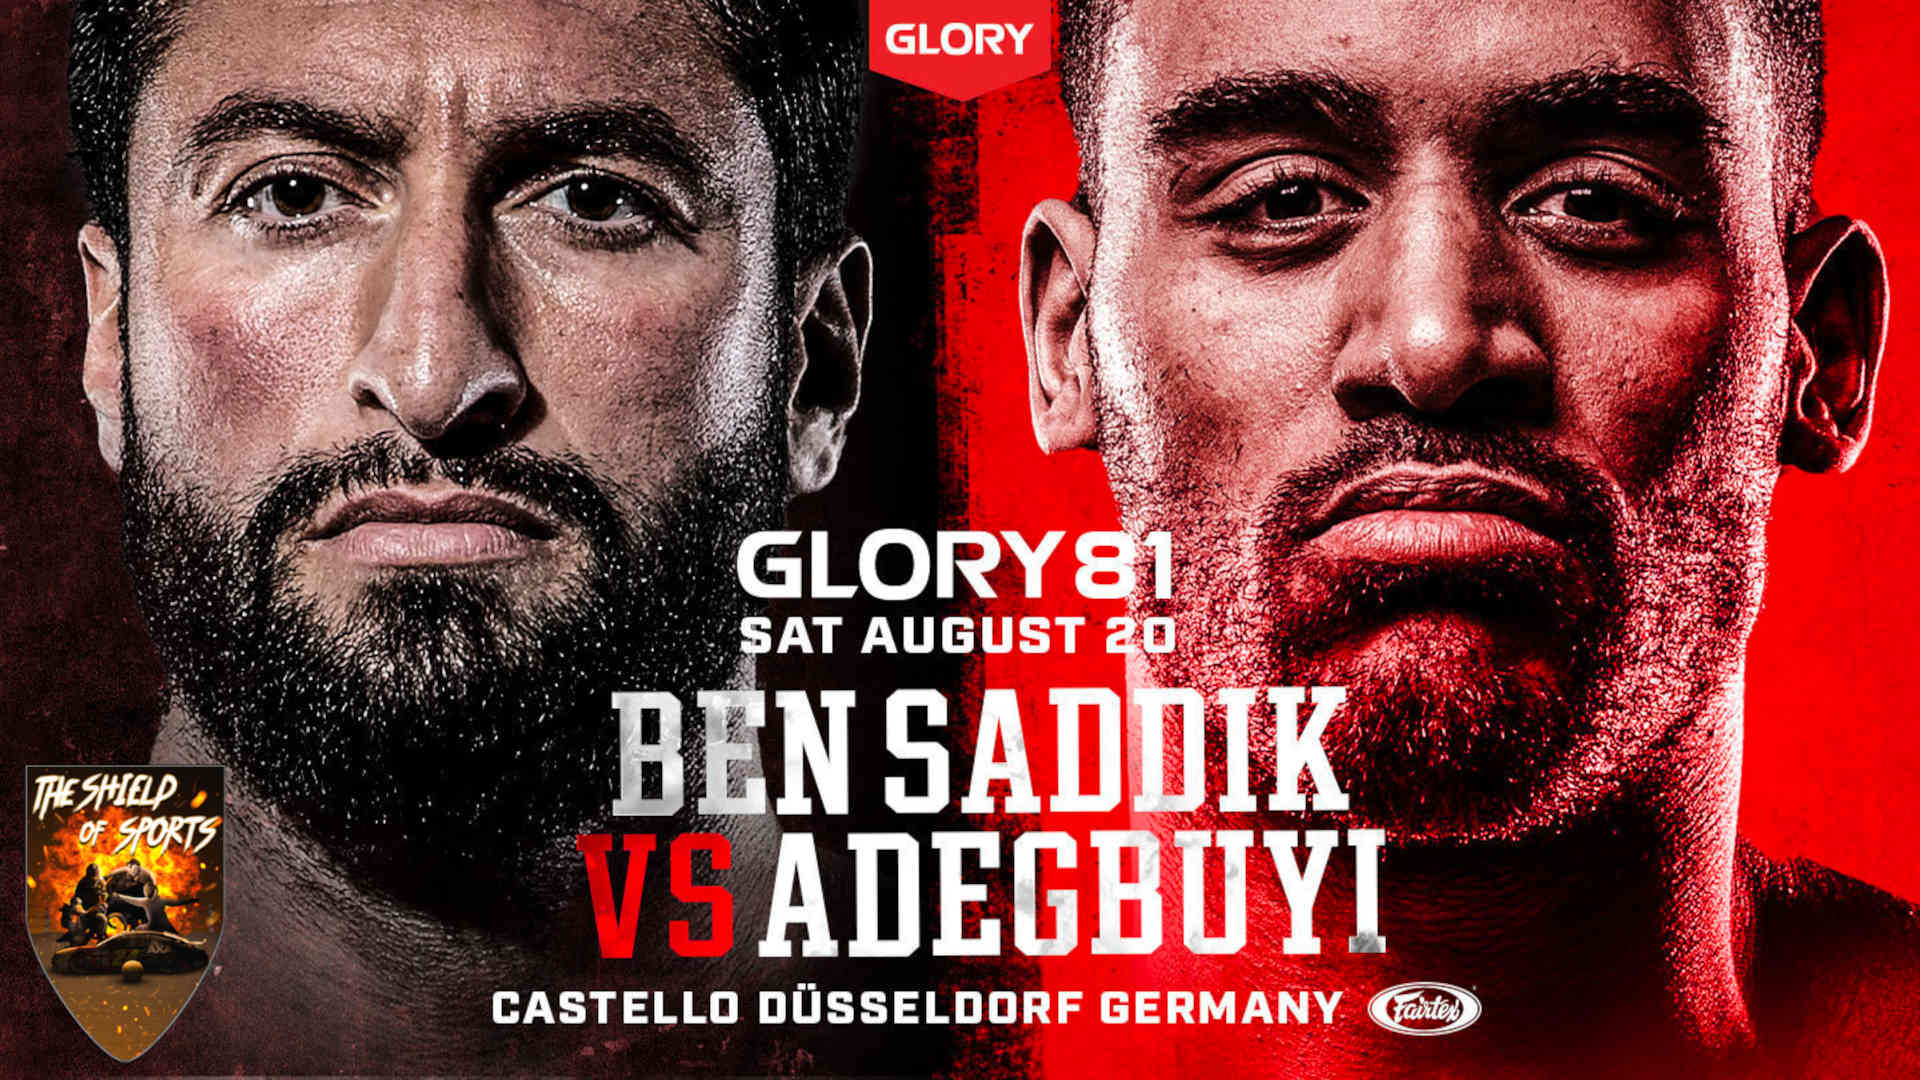 GLORY 81: Ben Saddik vs Adegbuyi 2 risultati